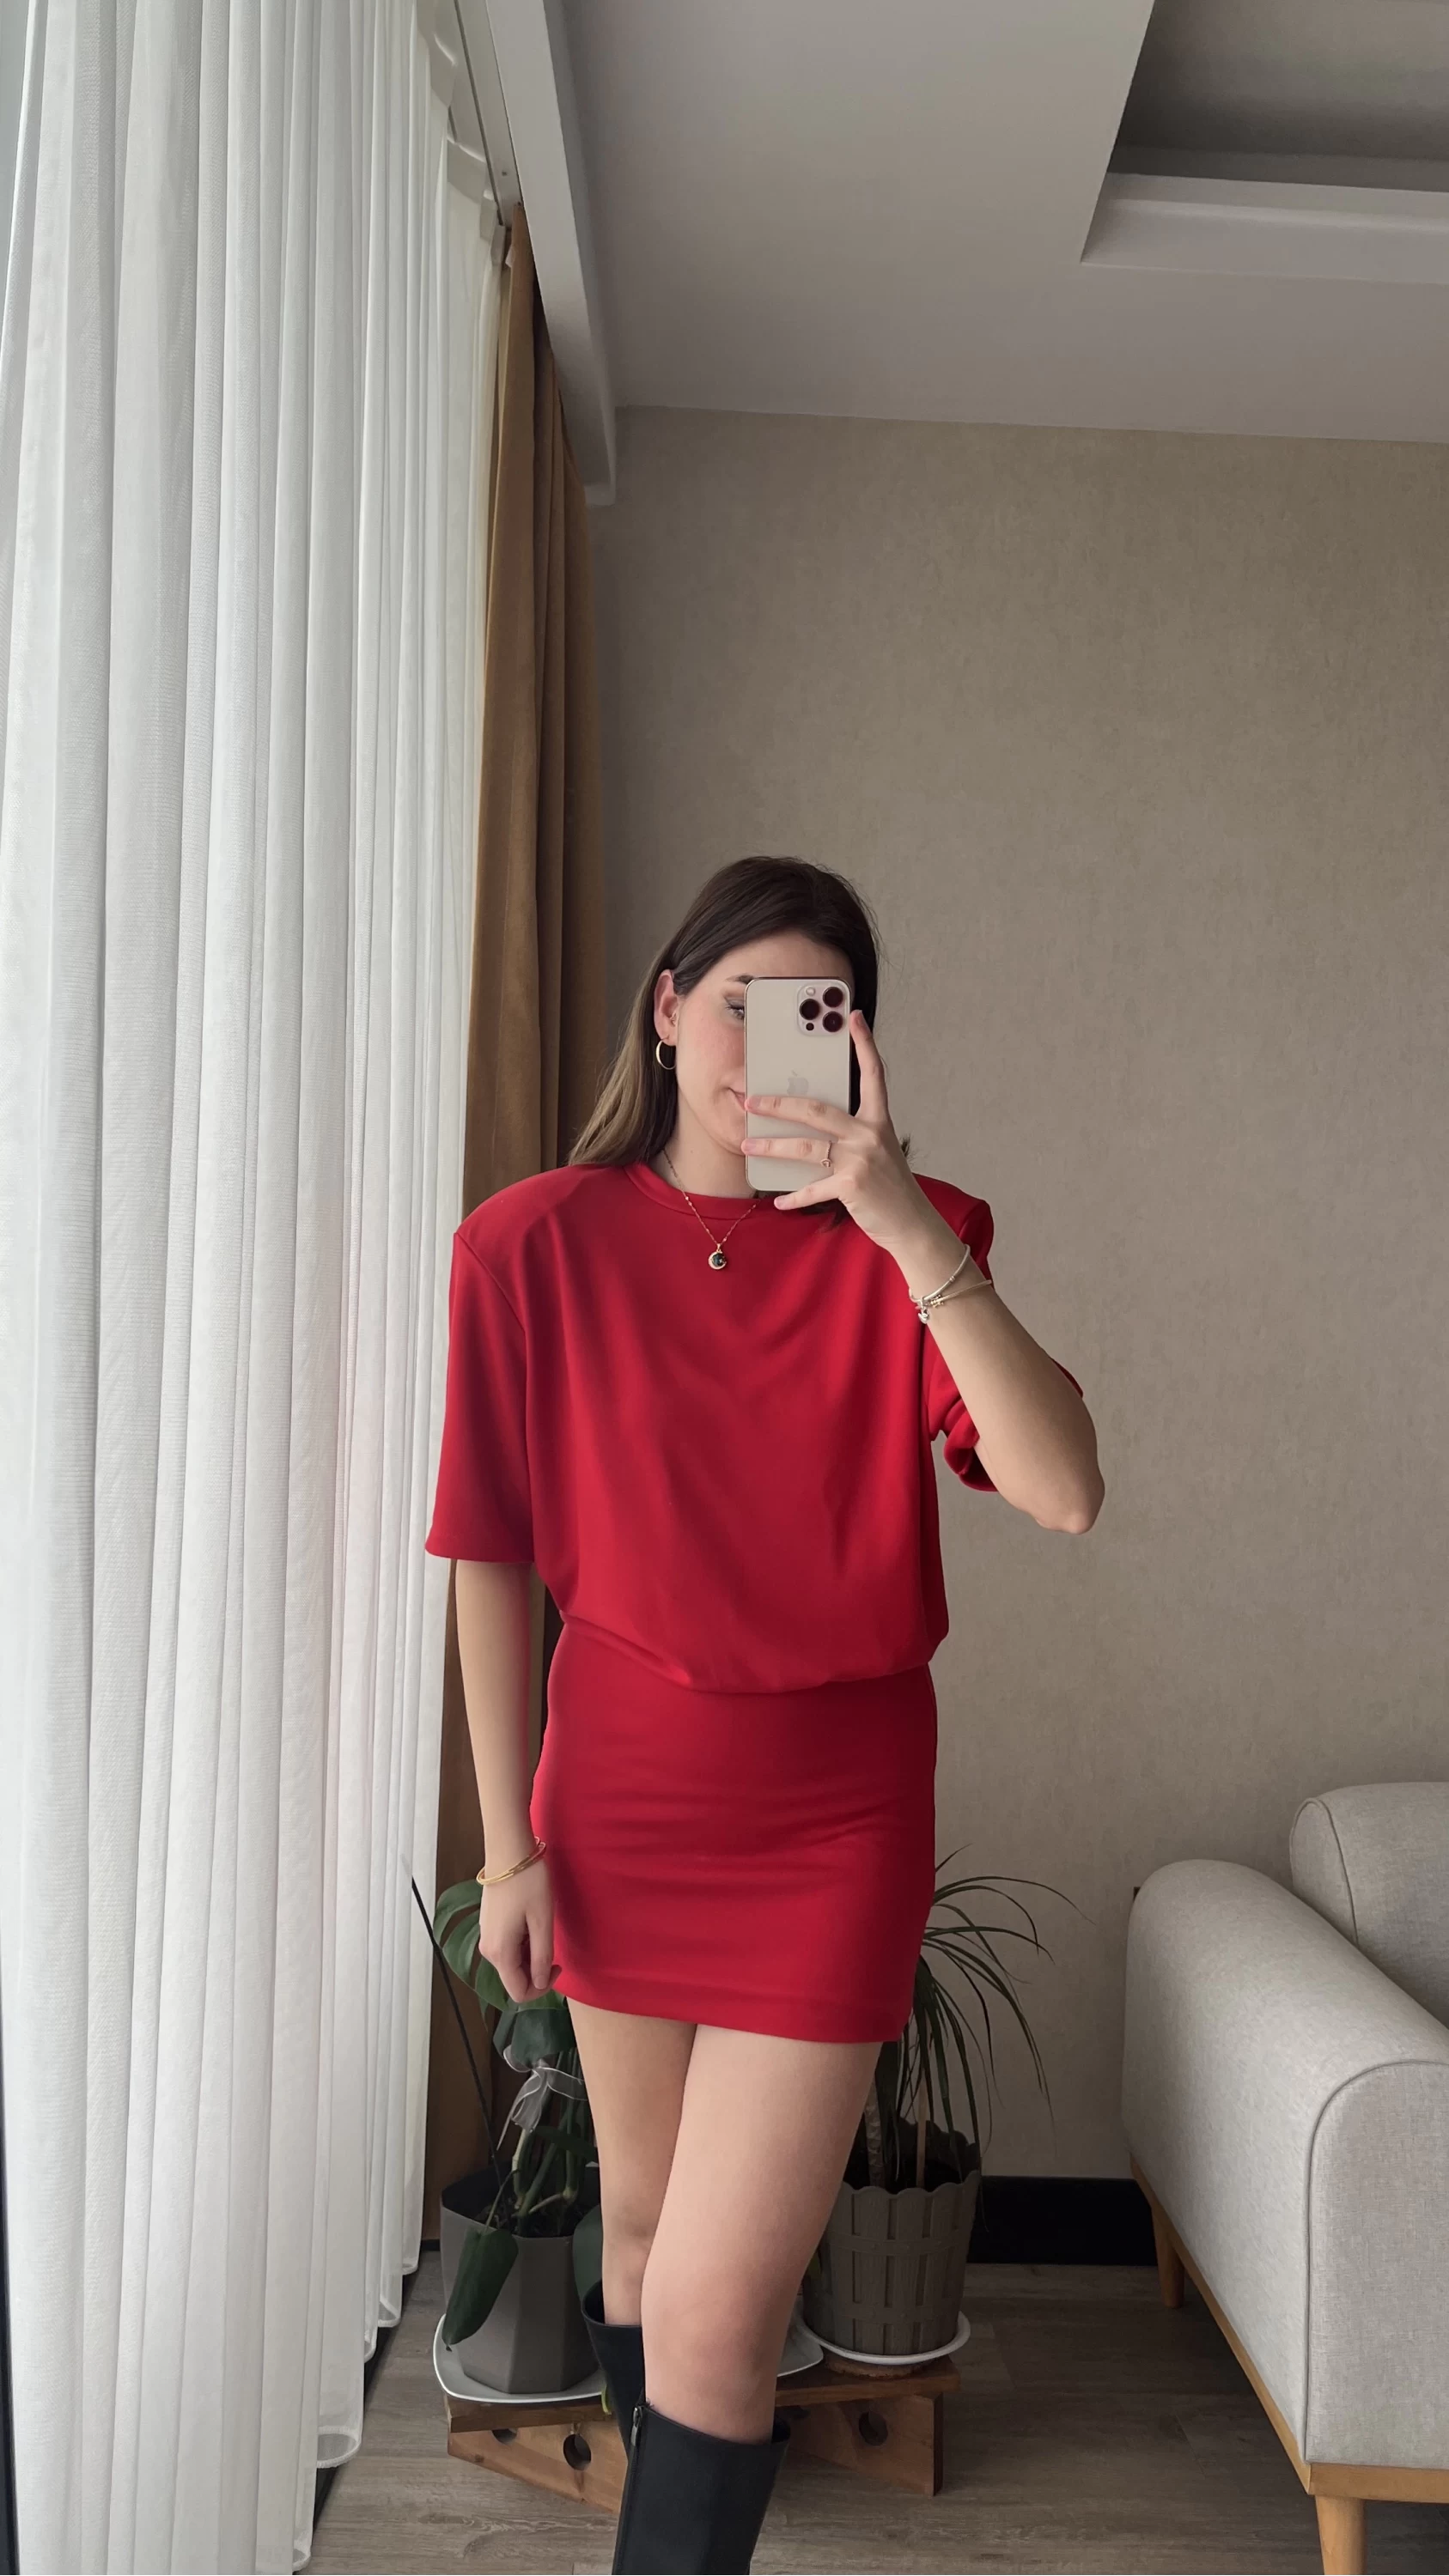 Premium Kırmızı Vatkalı Elbise